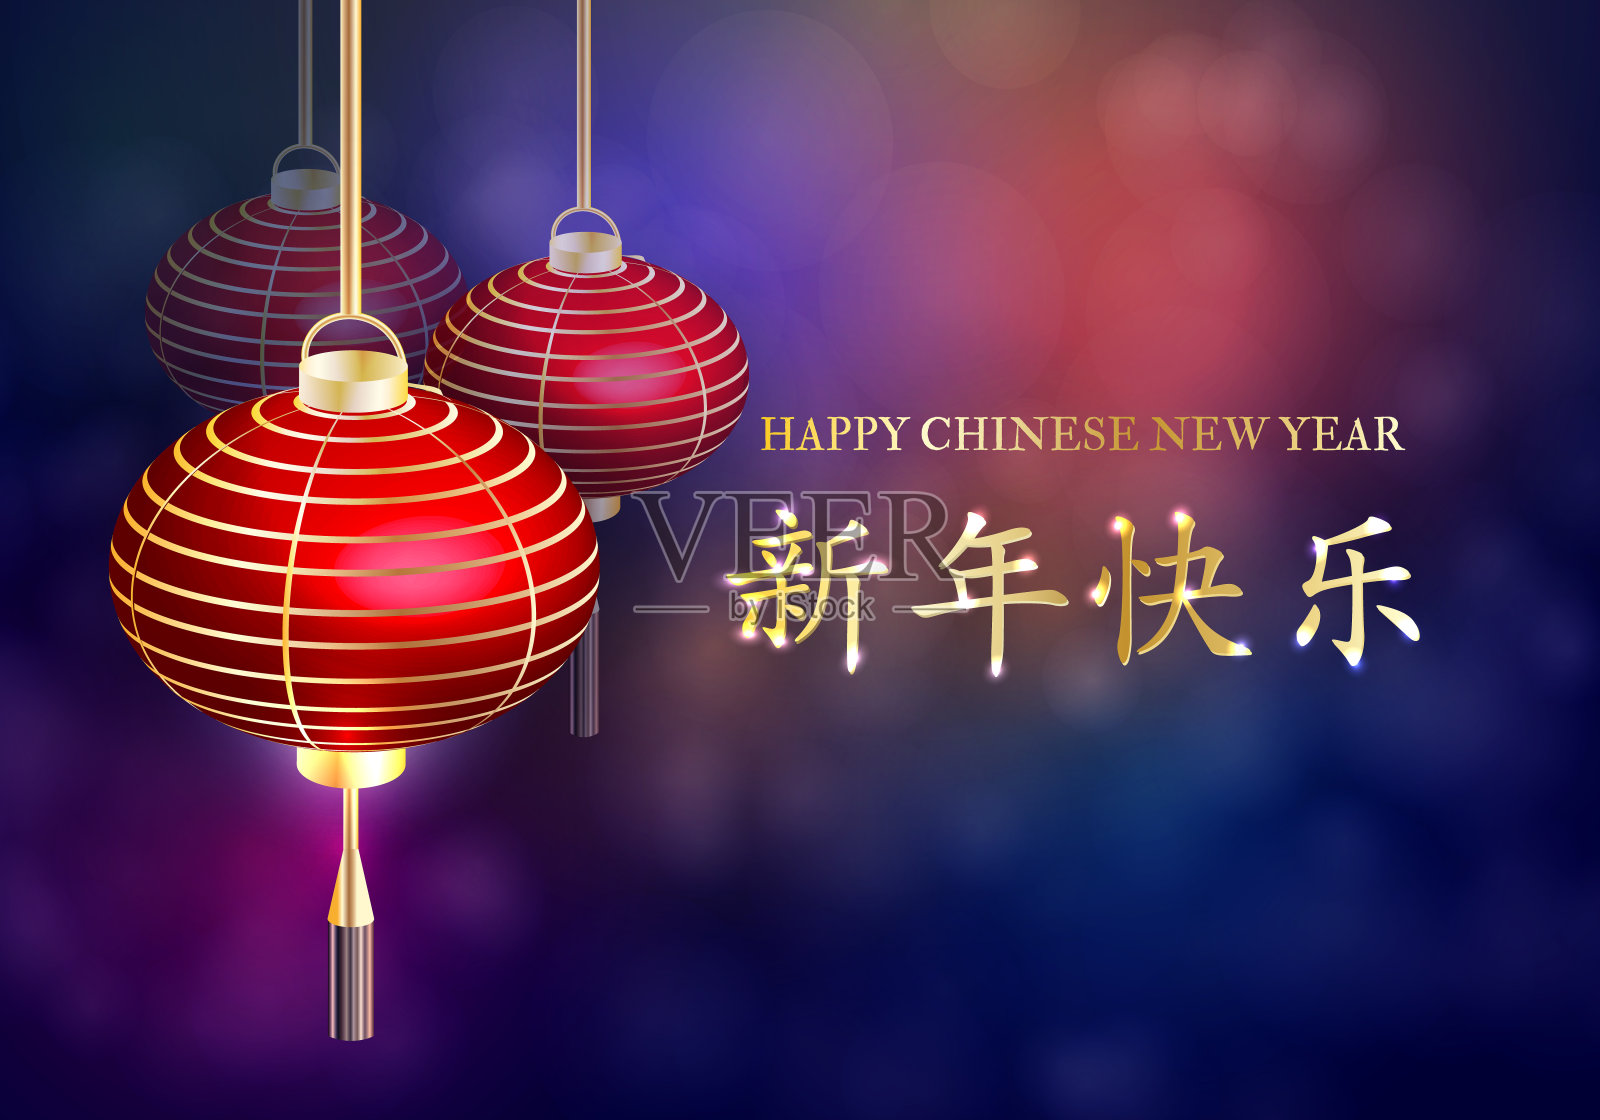 中国新年。明信片中国新年灯笼。新年快乐。矢量图设计模板素材